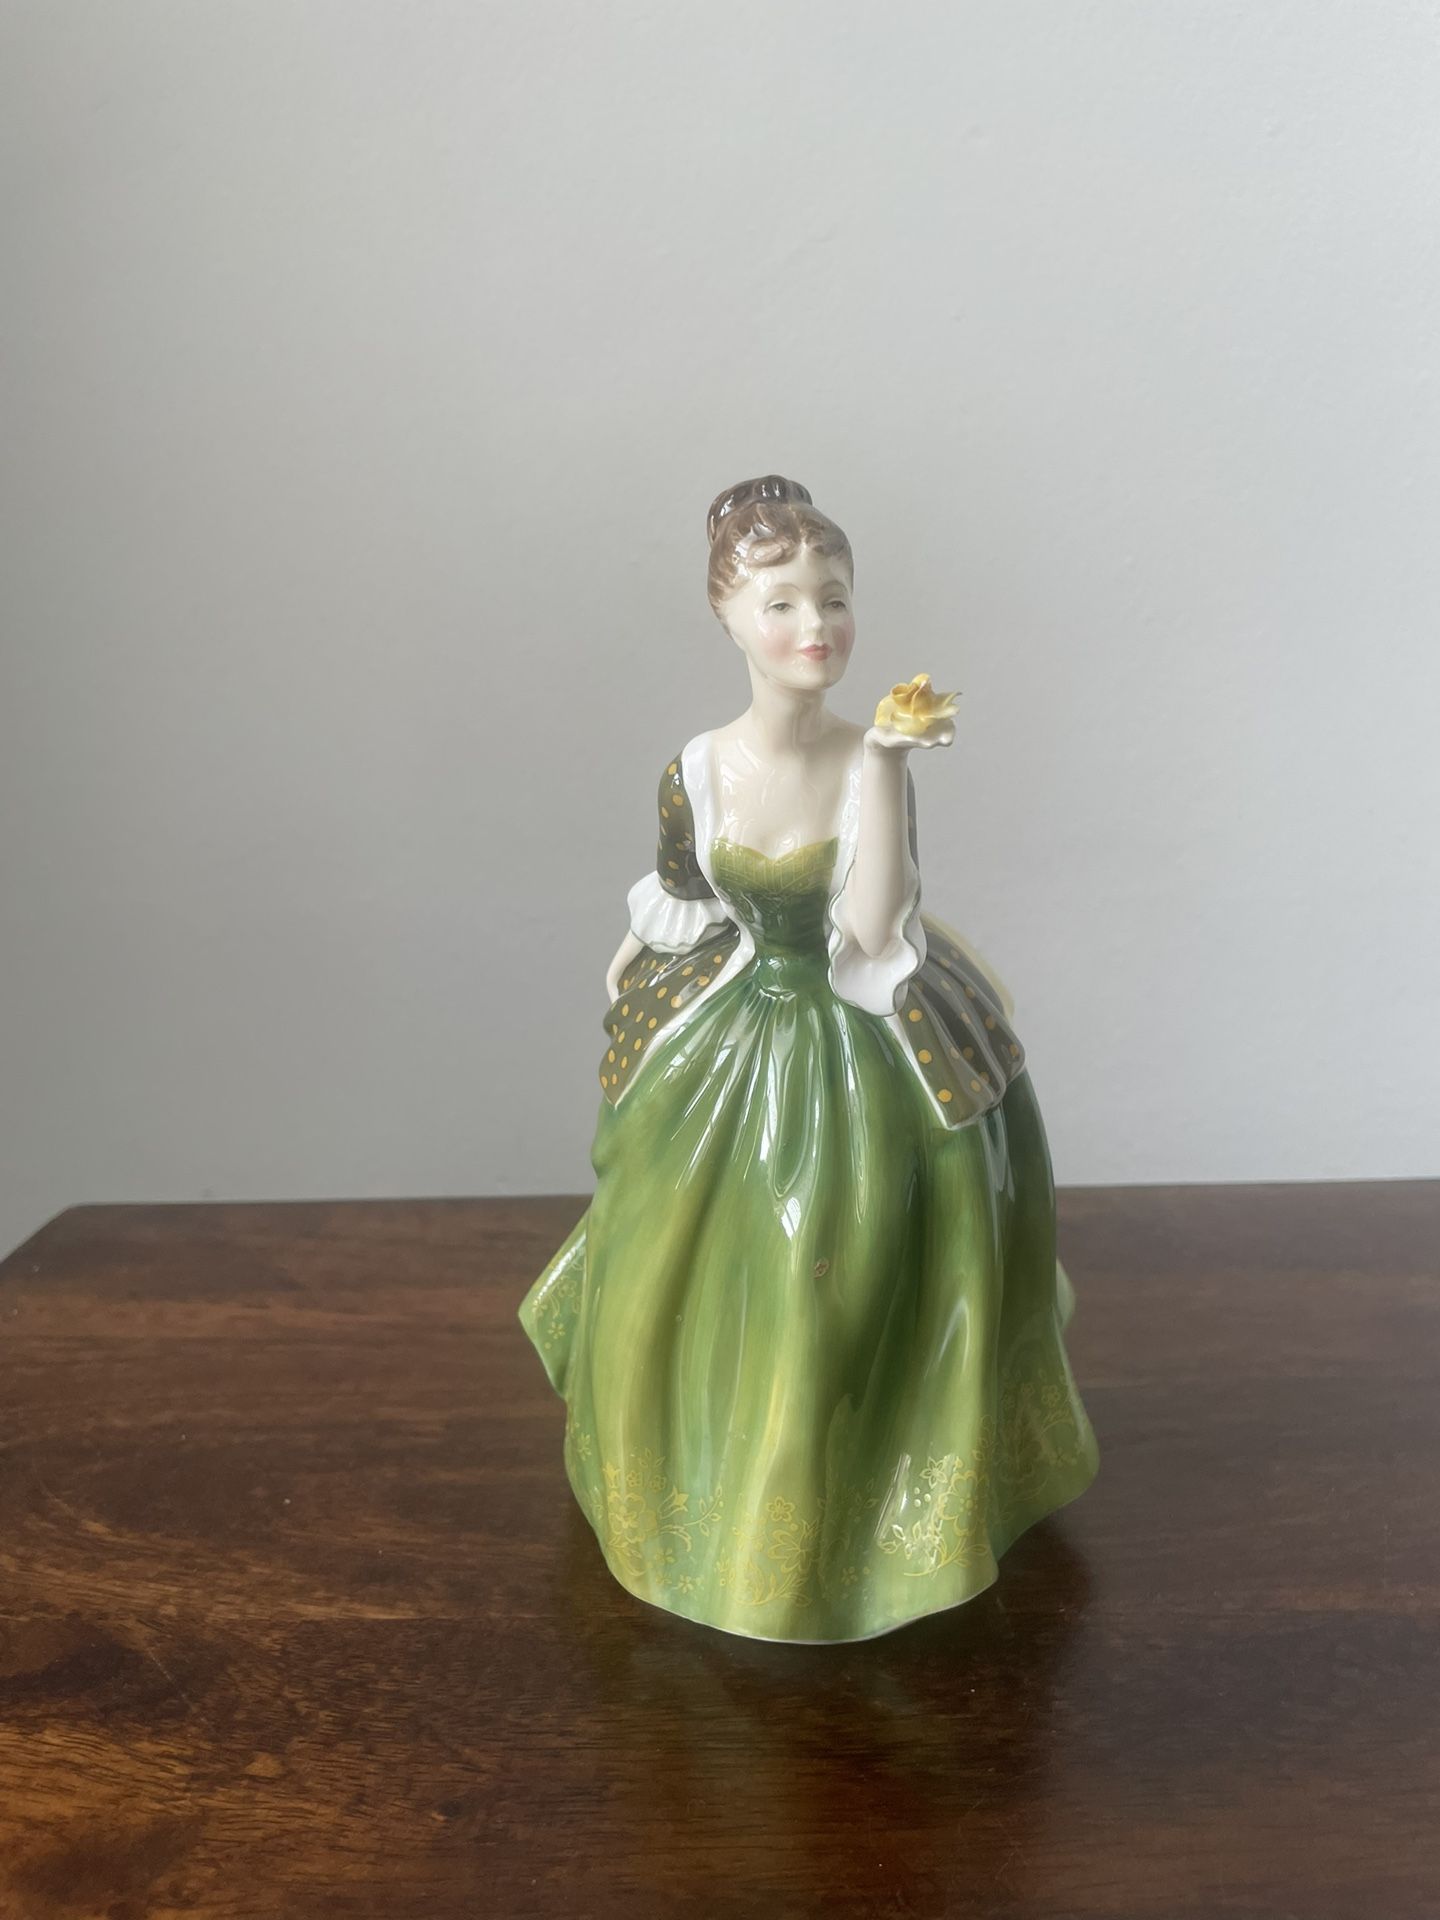 Royal Doulton Porcelain Figurine “Fleur” 1967